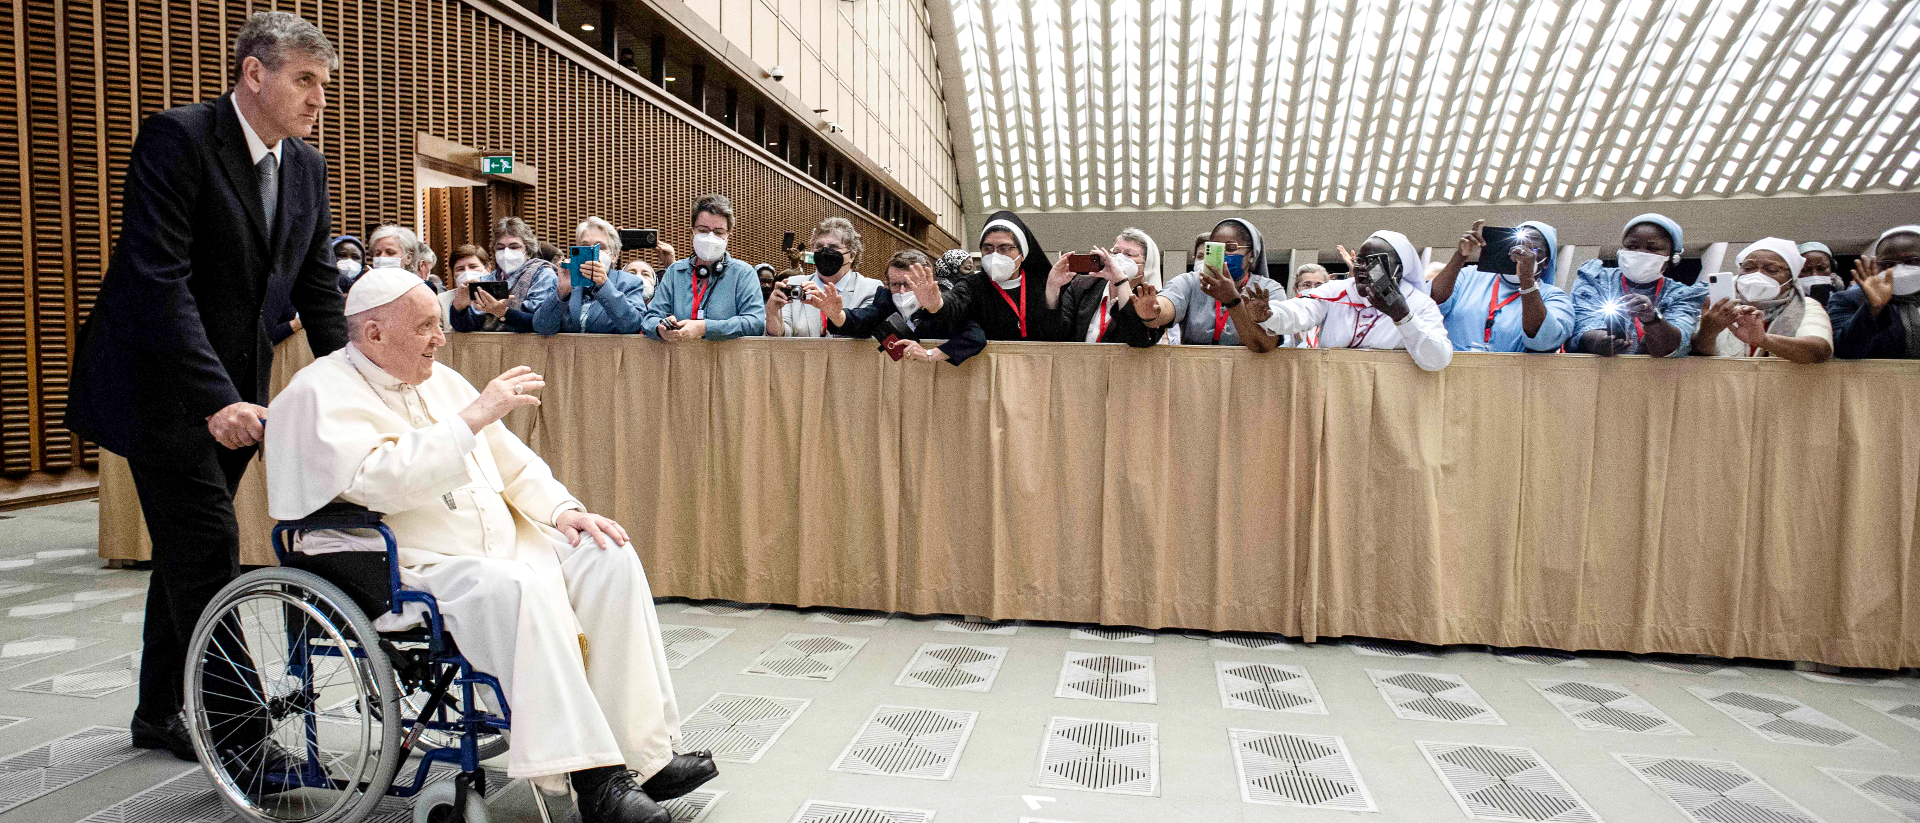 Papst Franziskus sitzt im Rollstuhl und winkt lachend Teilnehmern bei der Generalaudienz am 5. Mai 2022 im Vatikan.